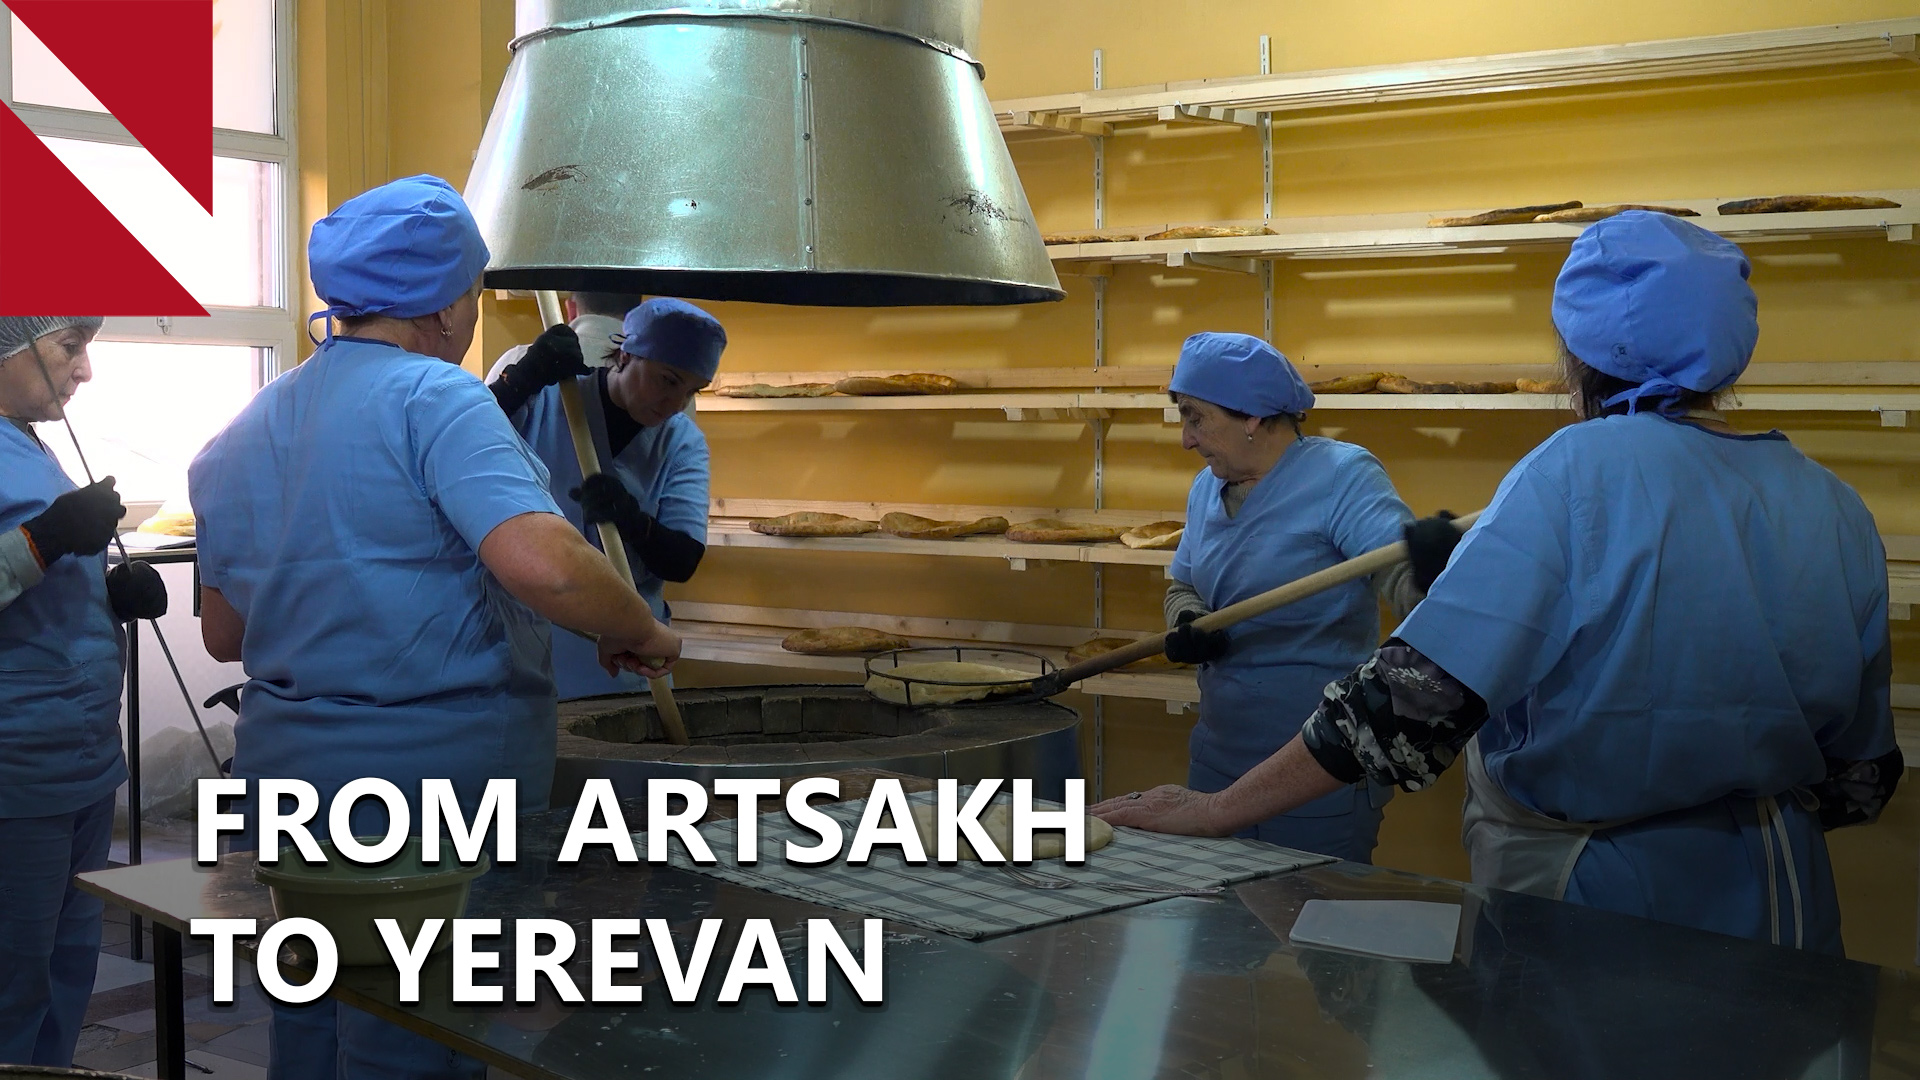 Entrepreneurs from Artsakh rebuild after displacement